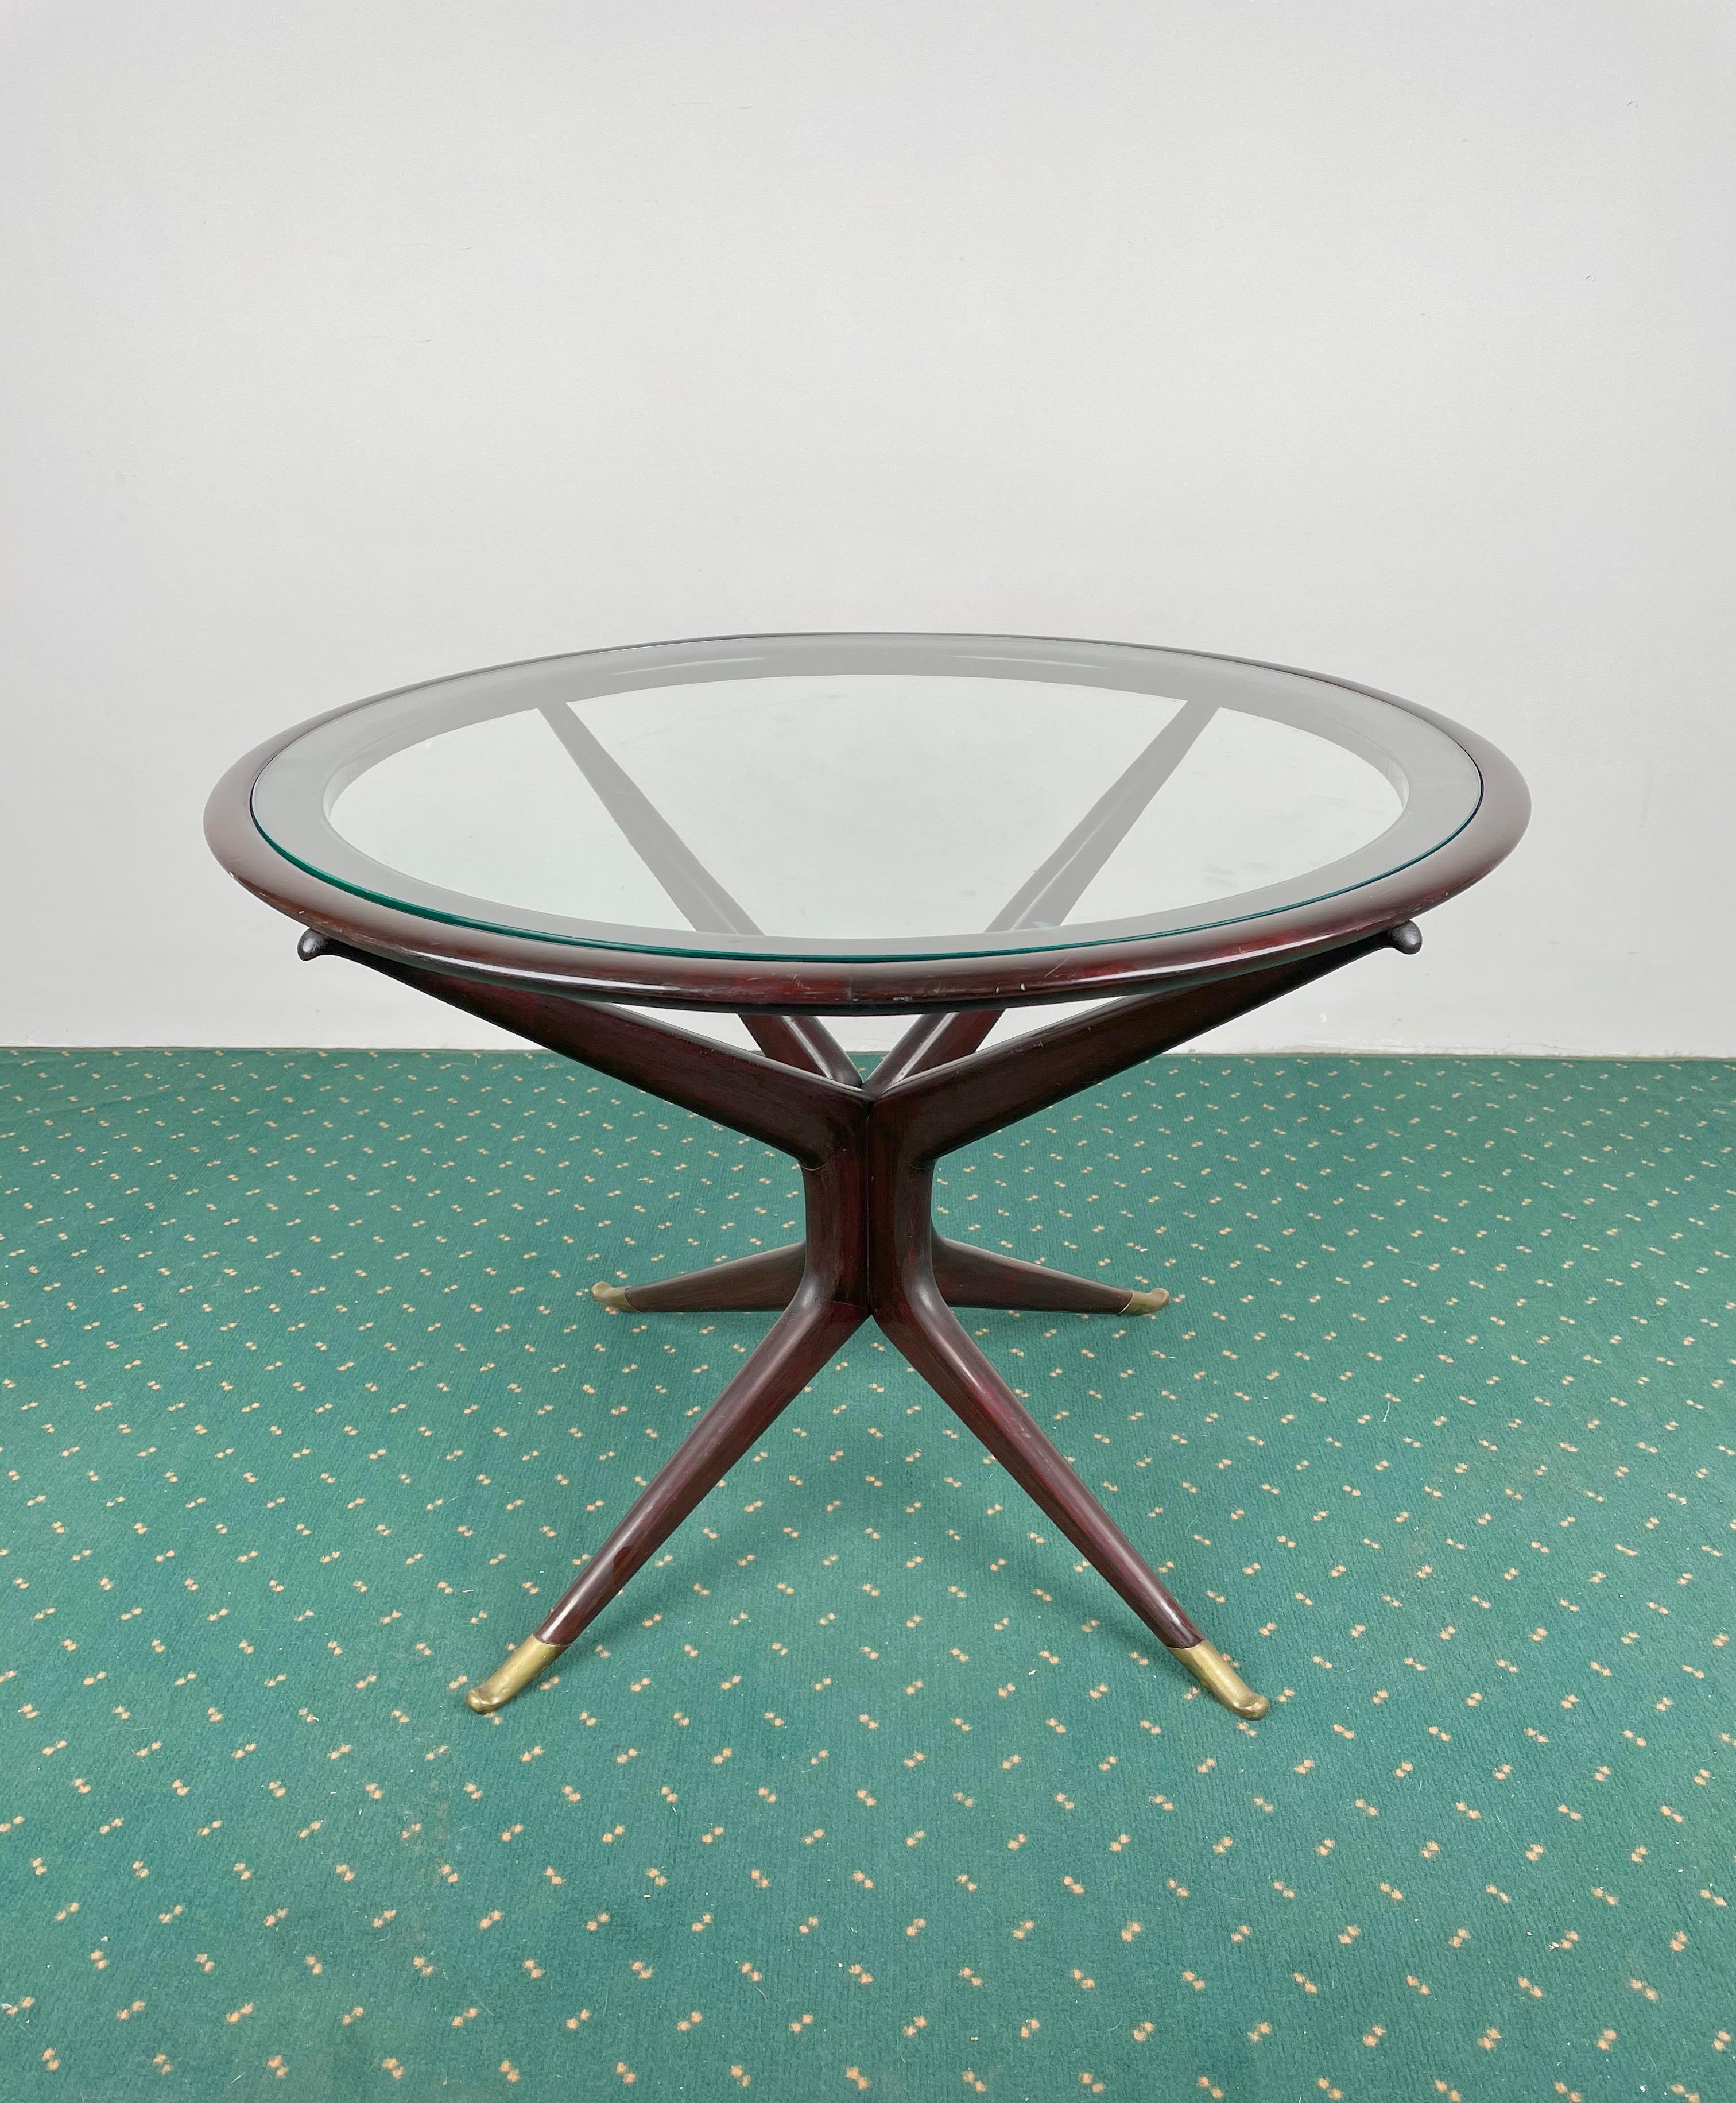 italienischer runder Couchtisch aus den 1950er Jahren mit Holzstruktur, Messingfüßen und Glasablage, der dem italienischen Designer Guglielmo Ulrich zugeschrieben wird.